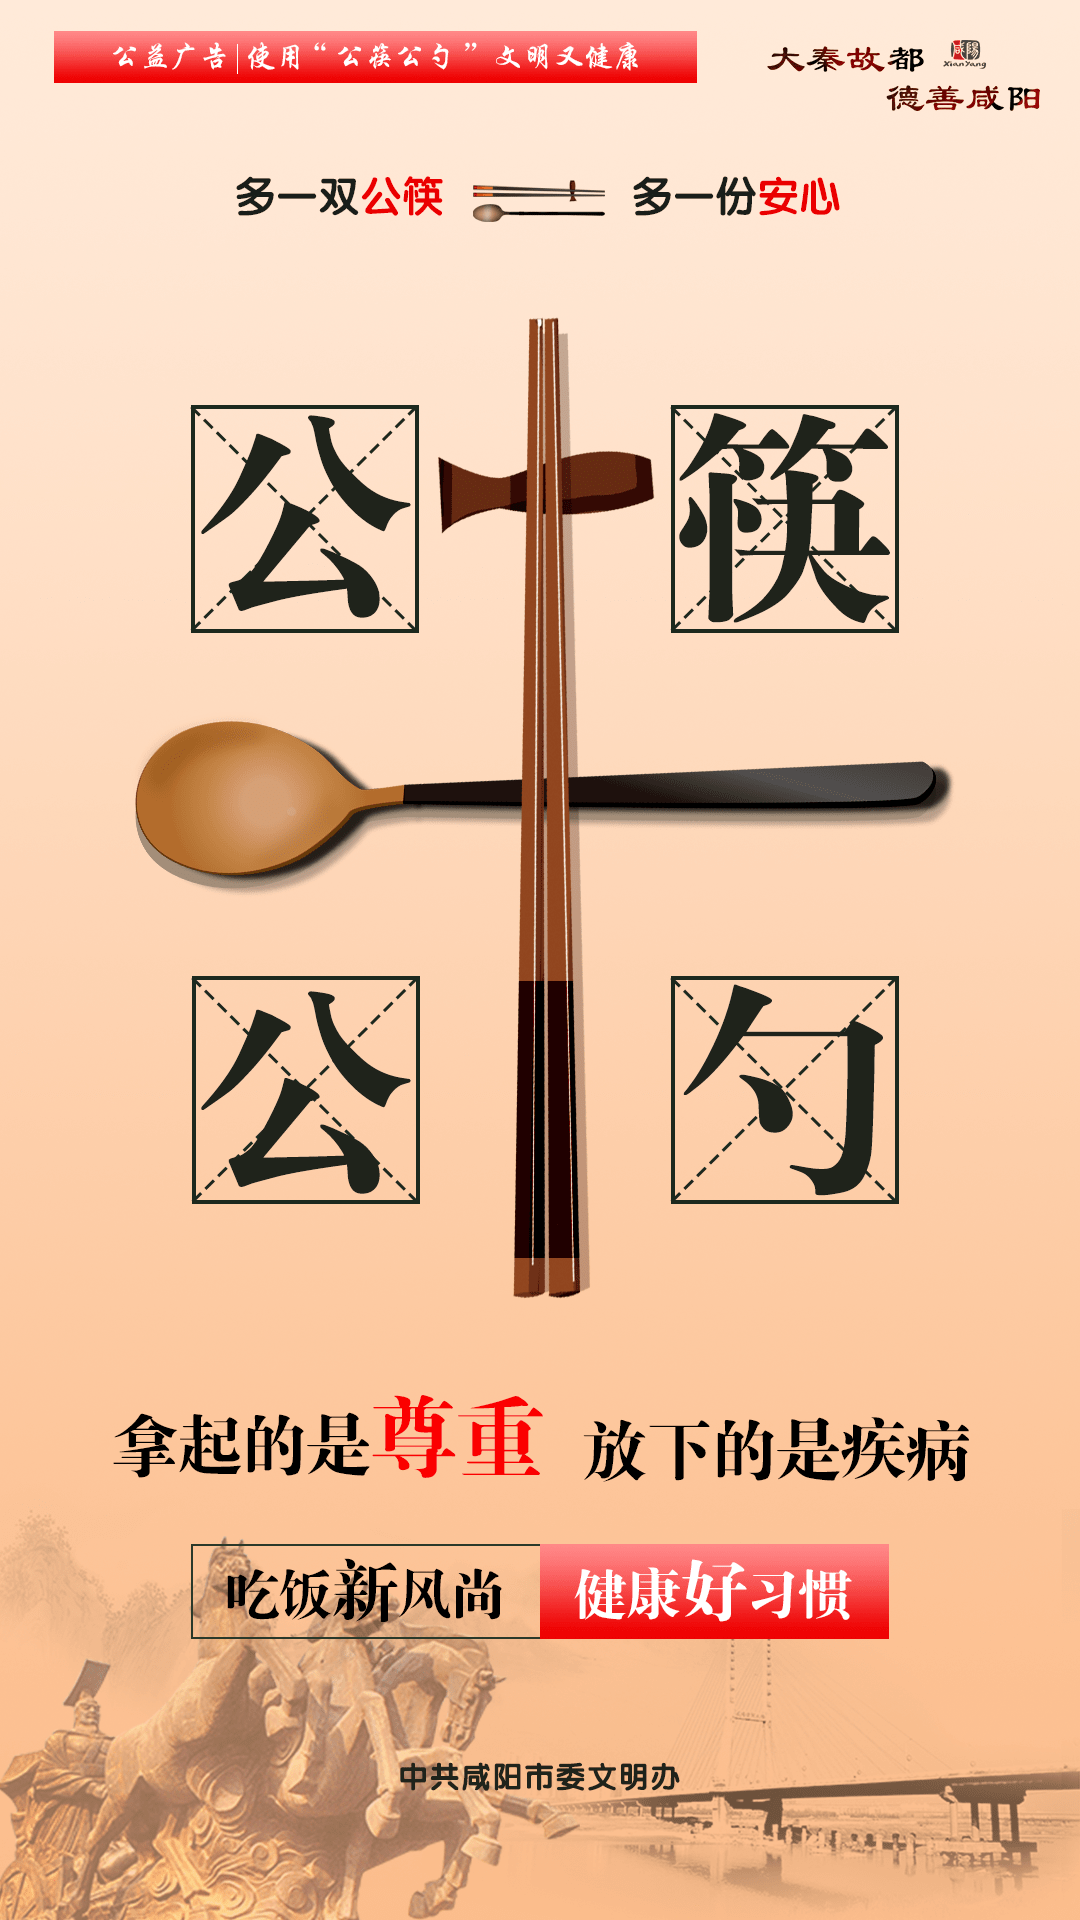 【新时代文明在泾阳】使用公筷 筷筷有爱